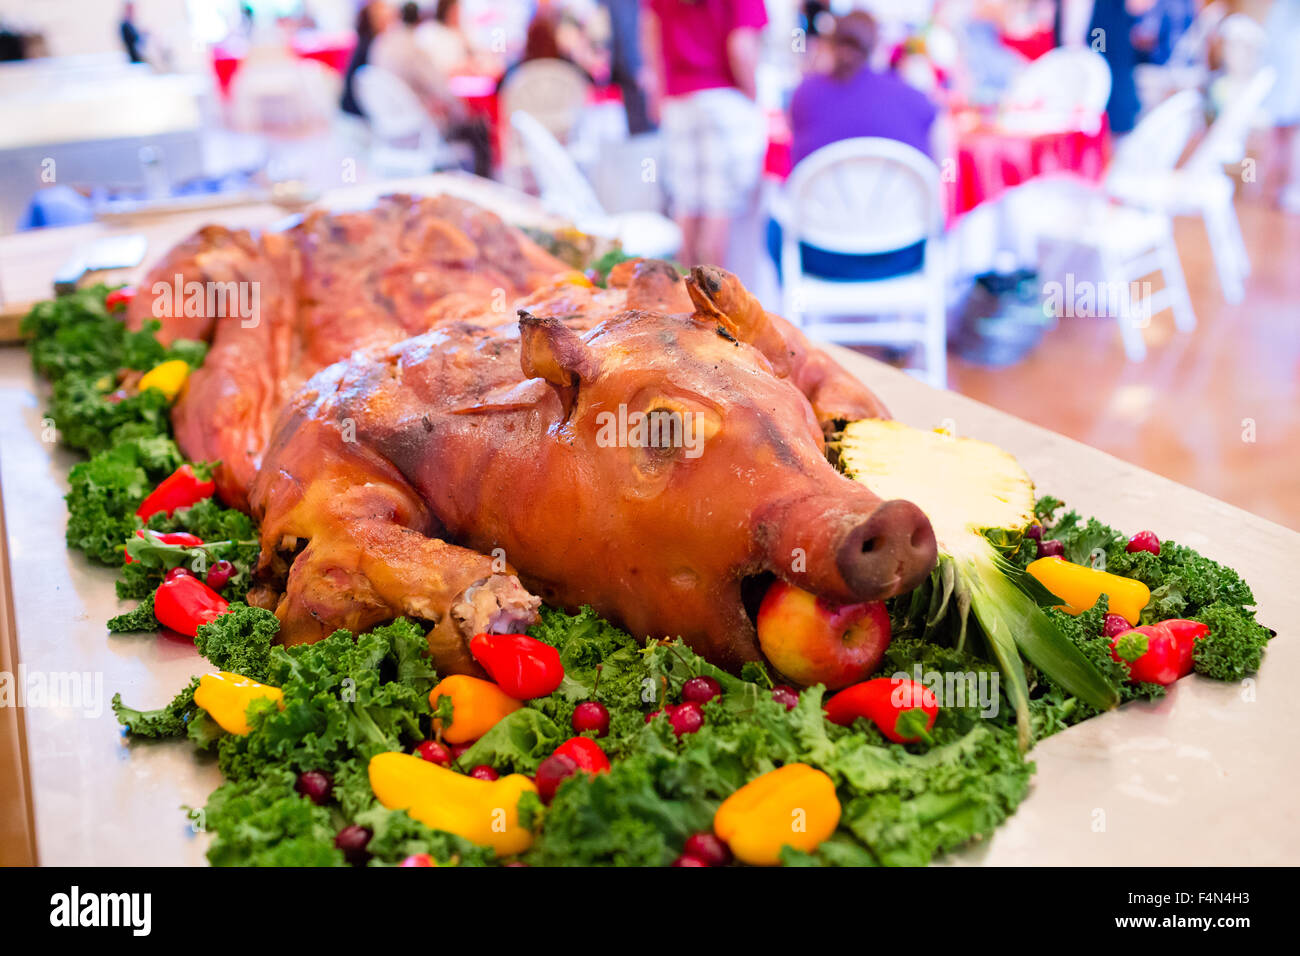 Todo el cerdo en una boda con una manzana en su boca en una tabla